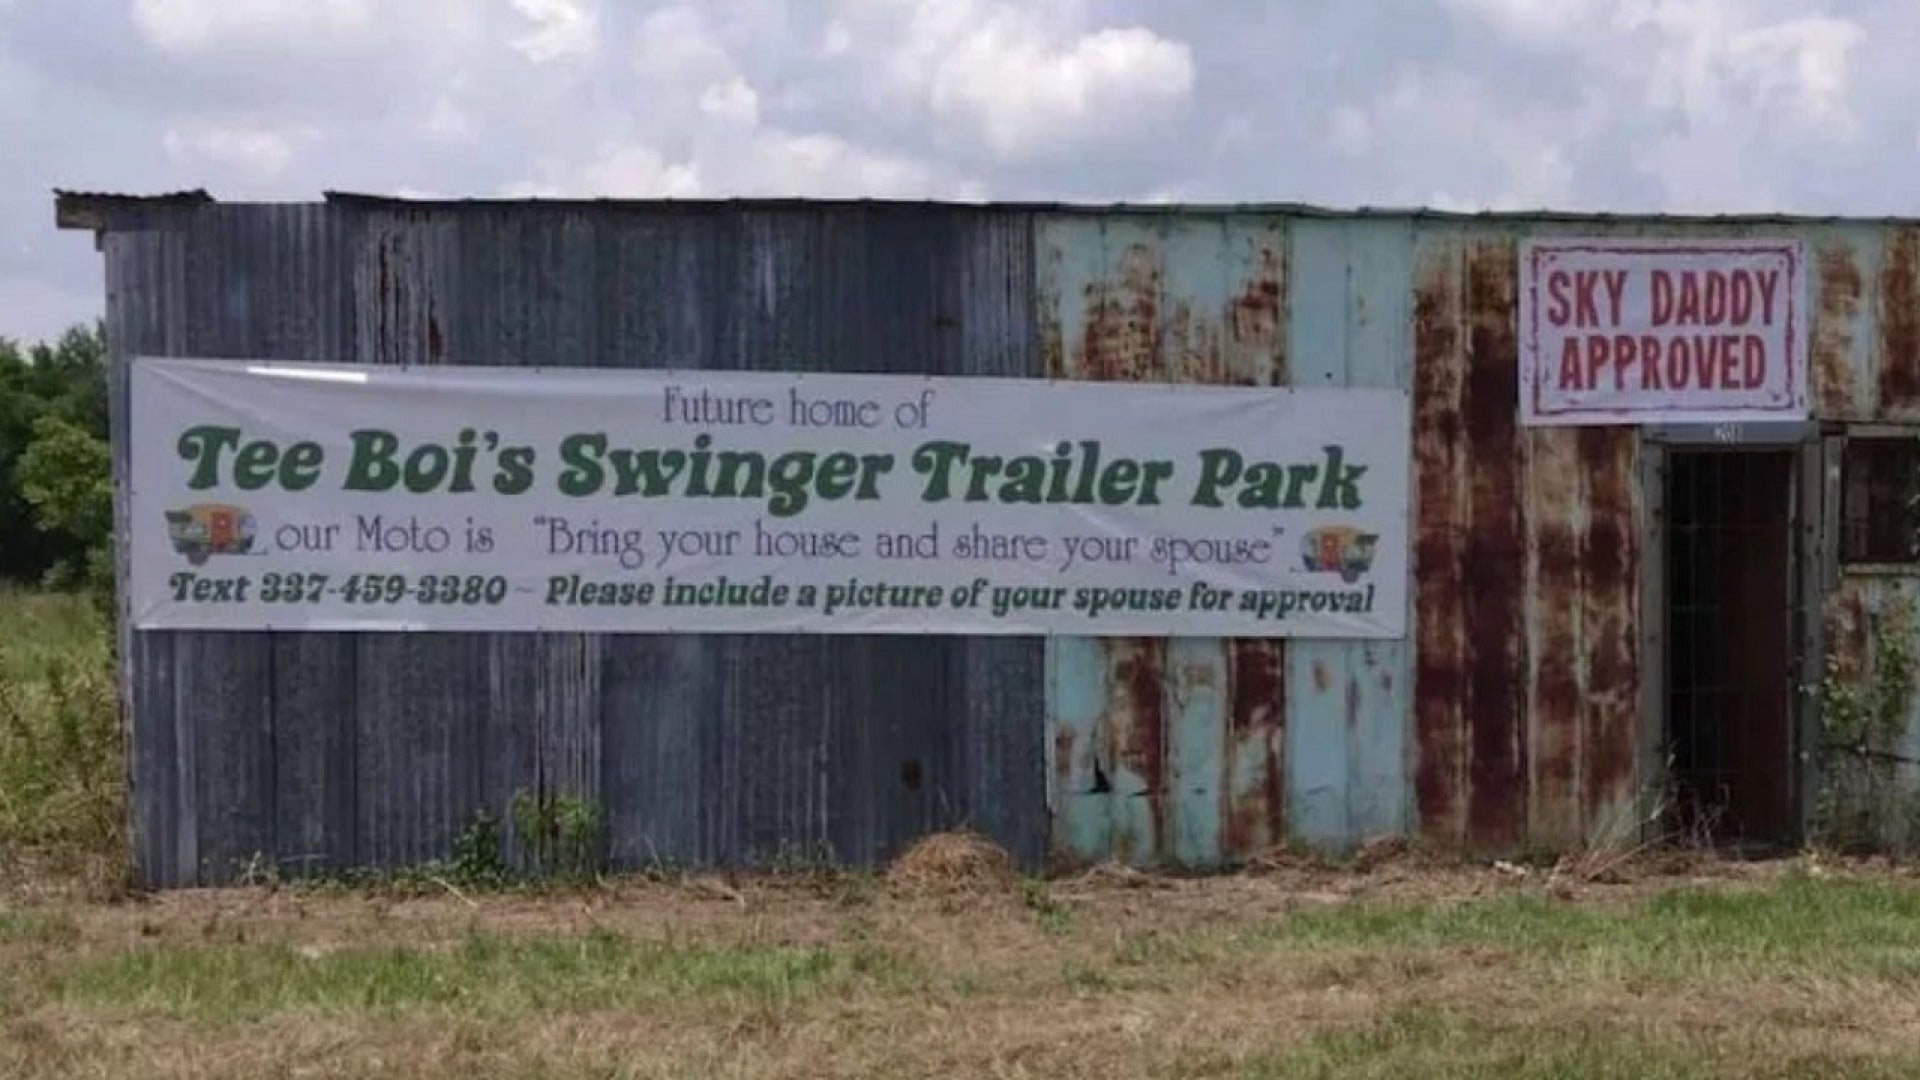 Opening Trailer Park for Swingers